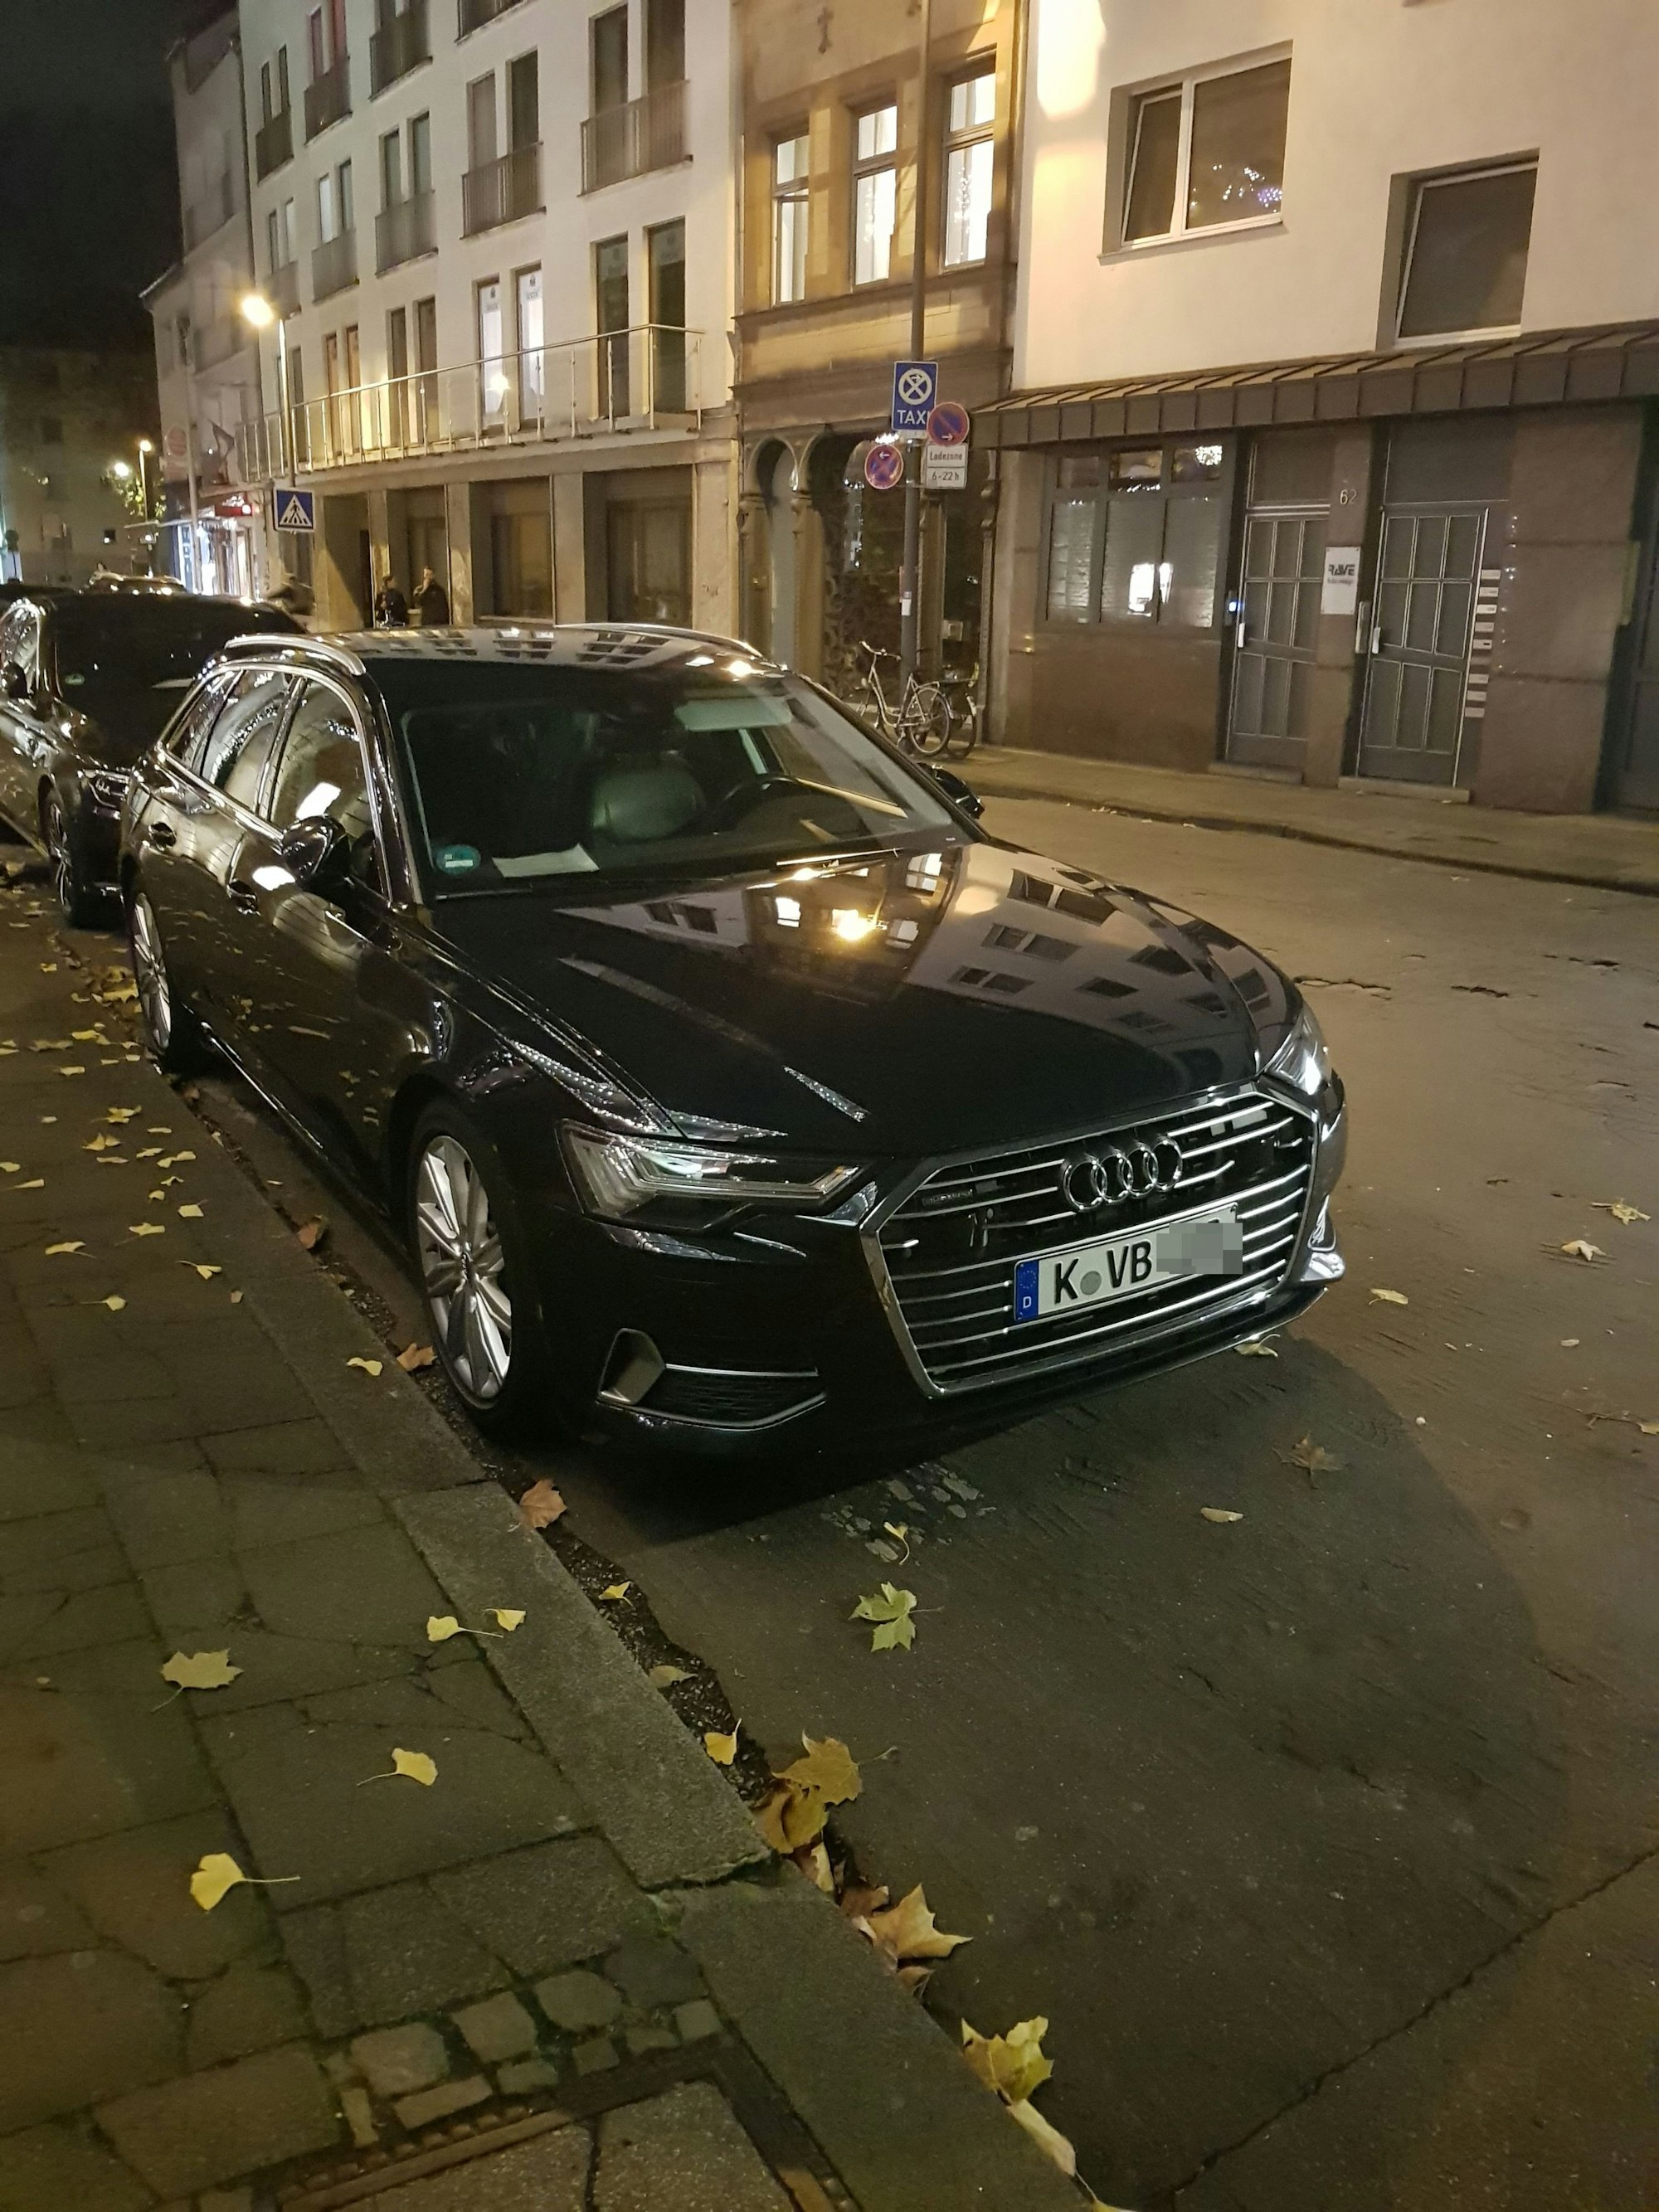 Ein schwarzer Audi steht am Straßenrand.